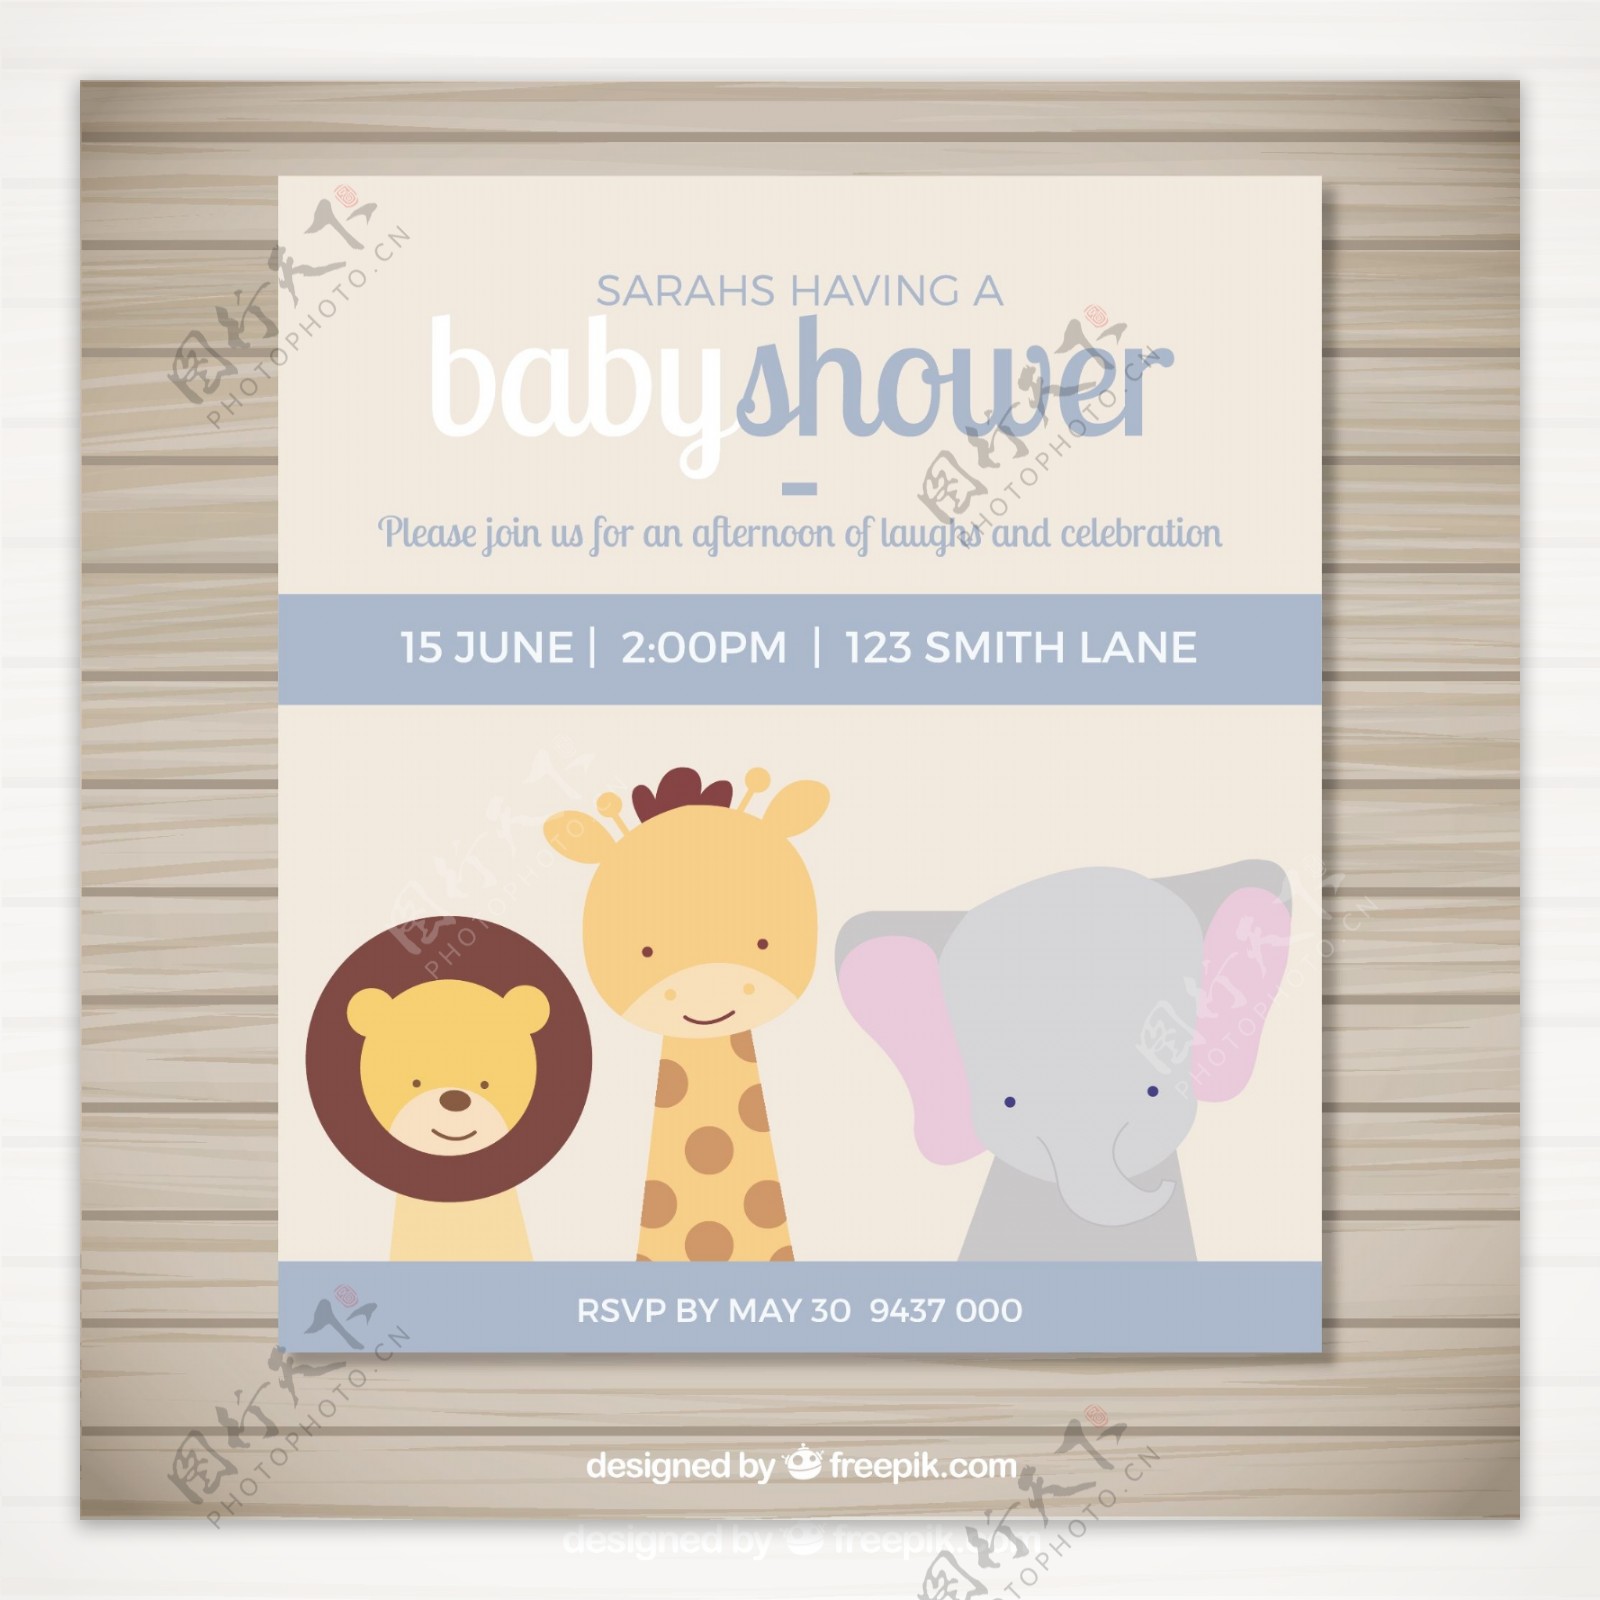 邀请婴儿洗澡可爱的动物